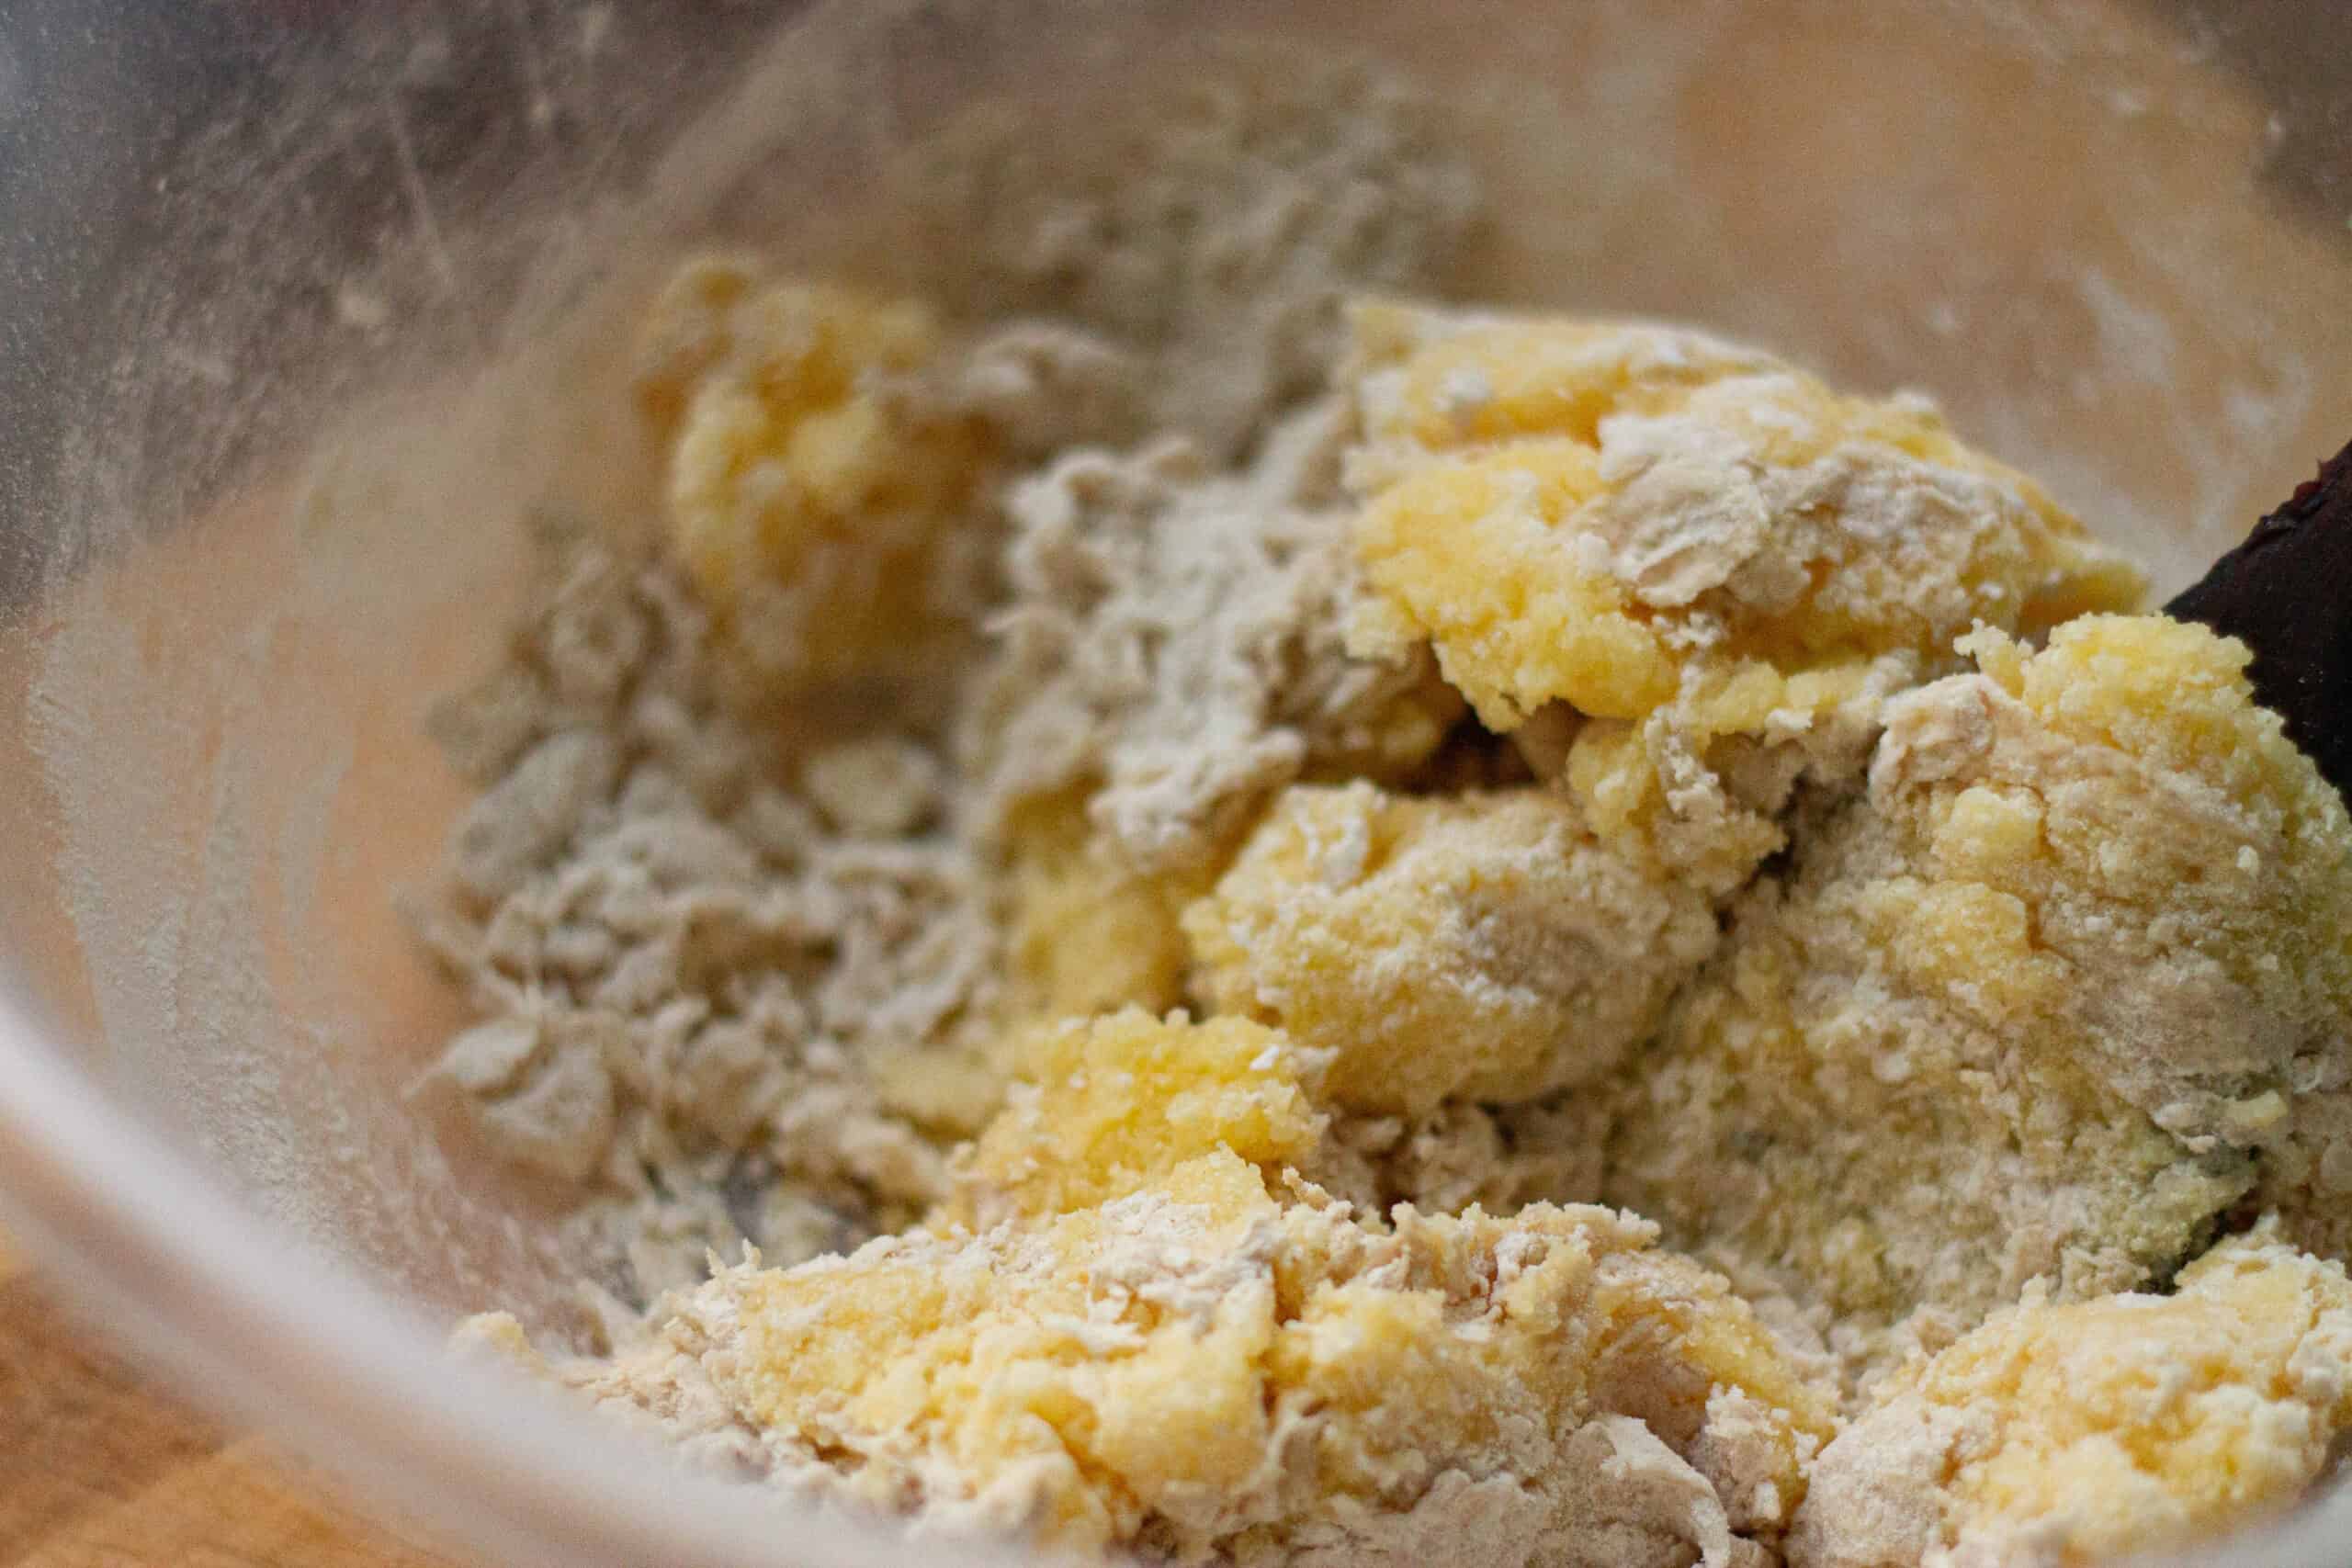 MIxing polenta into dough